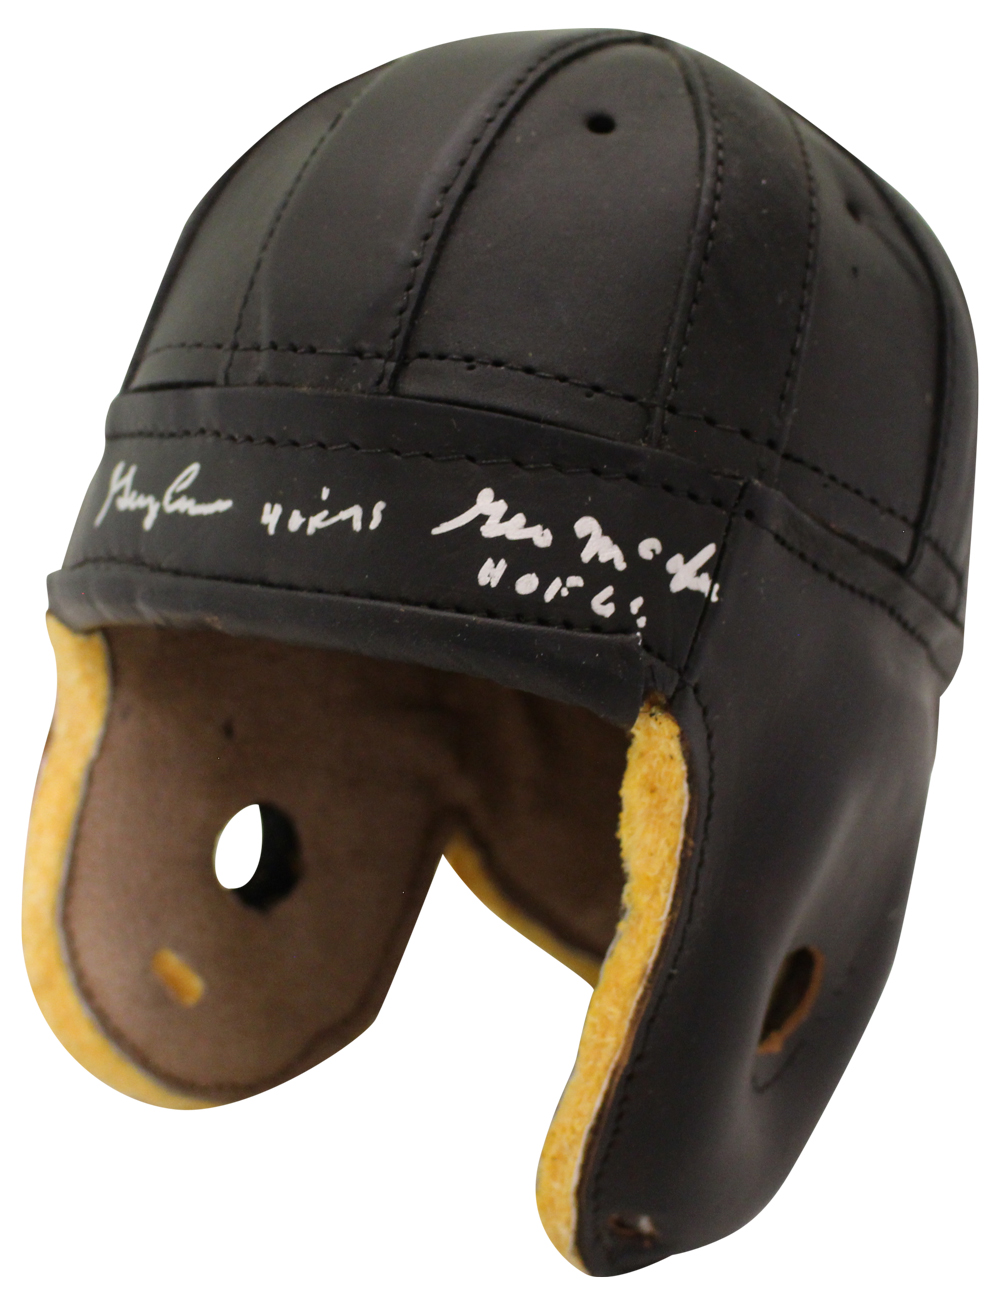 George McAfee & George Connor Signed F/S Black Leather Helmet JSA